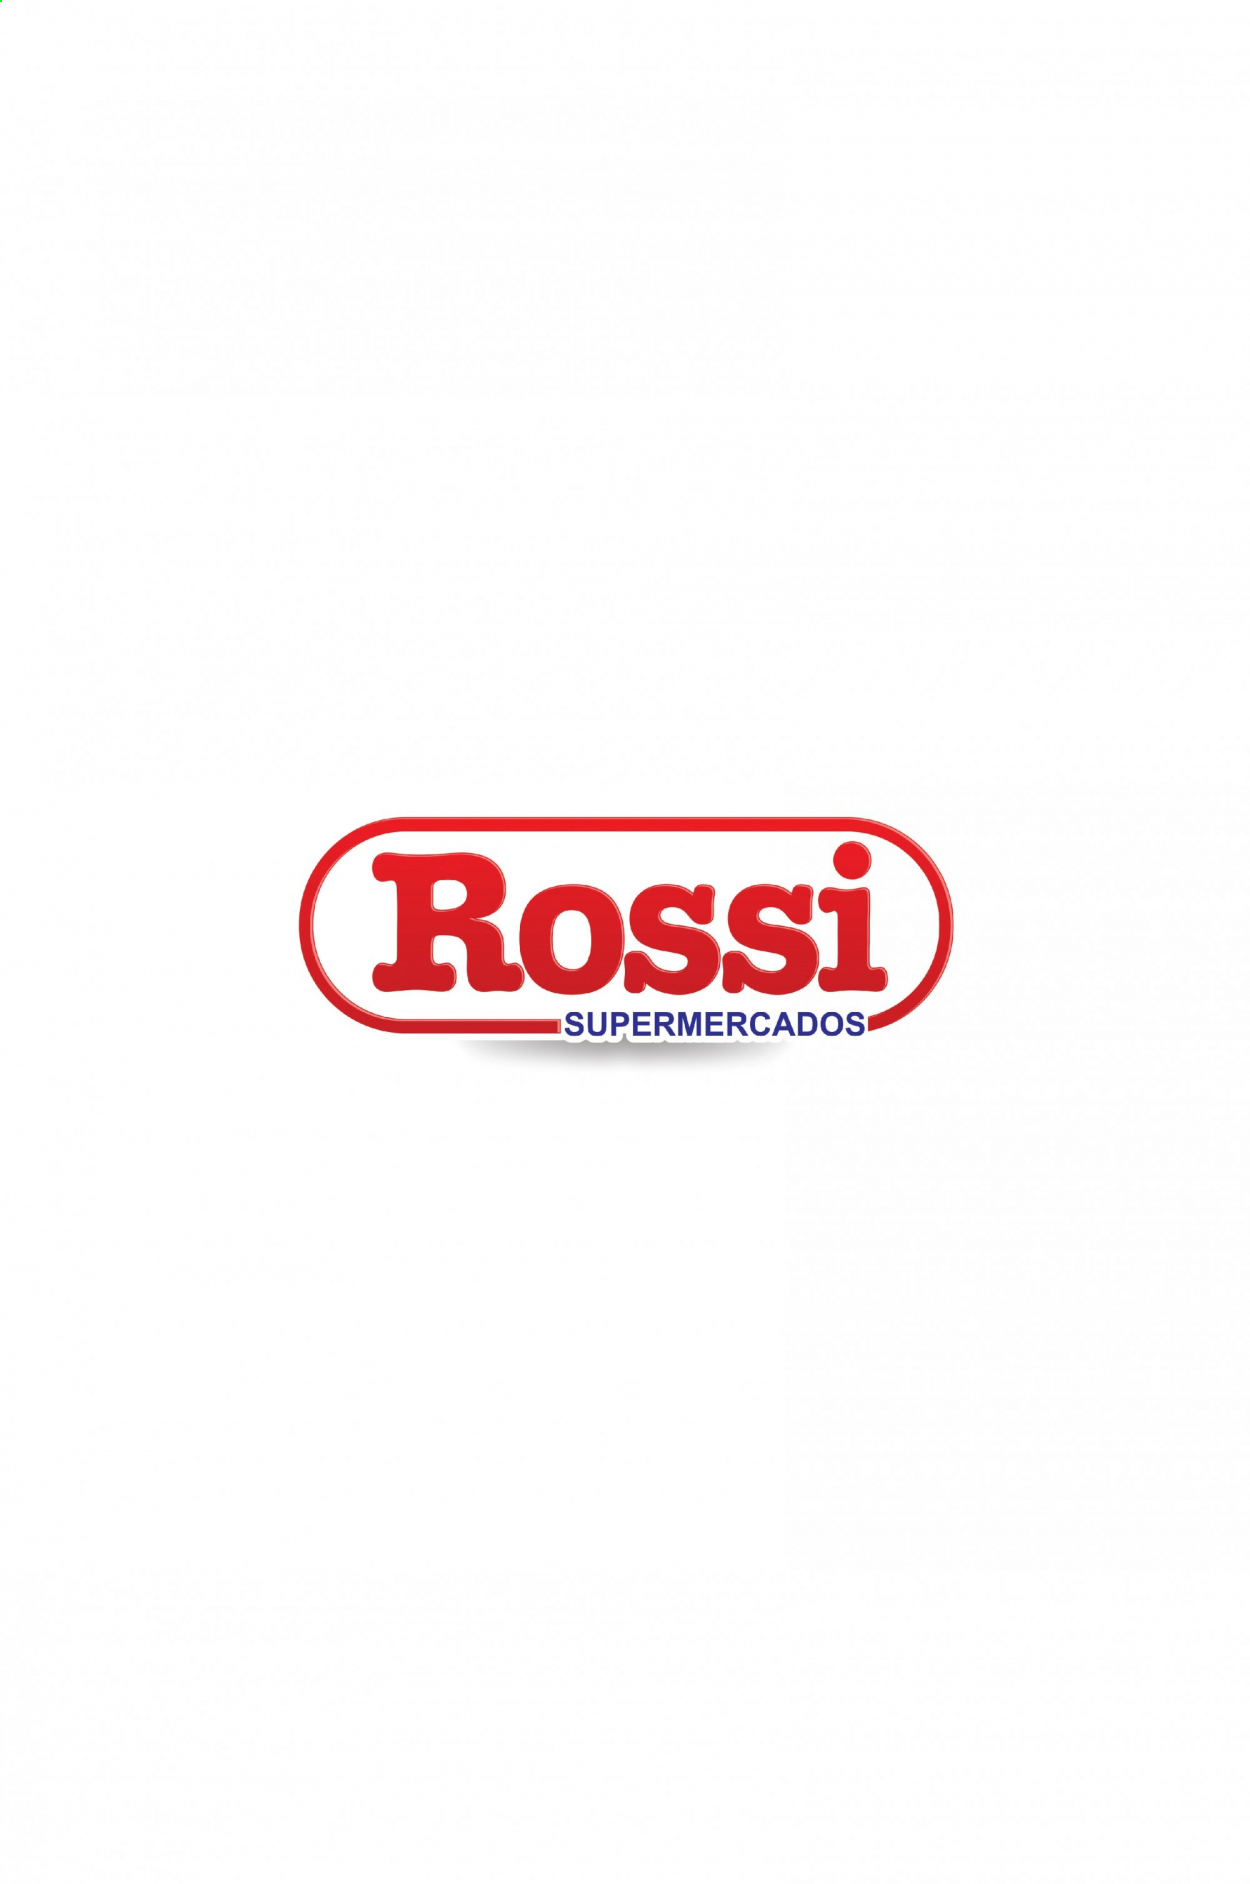 Encarte Rossi Supermercados  - 10.04.2021 - 11.04.2021.